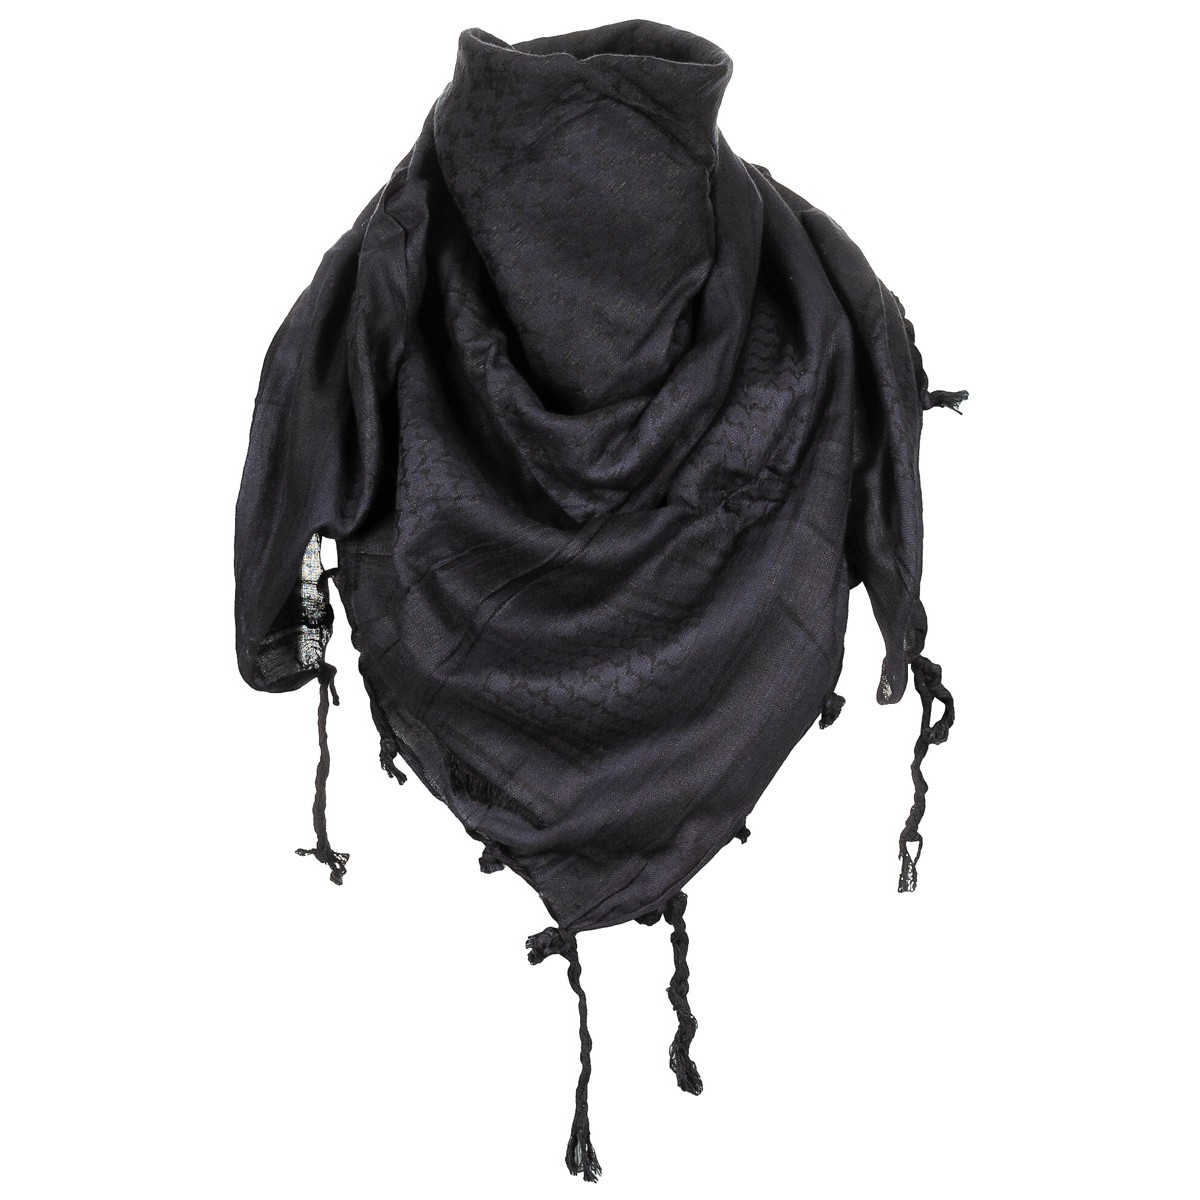 Šátek Shemagh MFH - černý